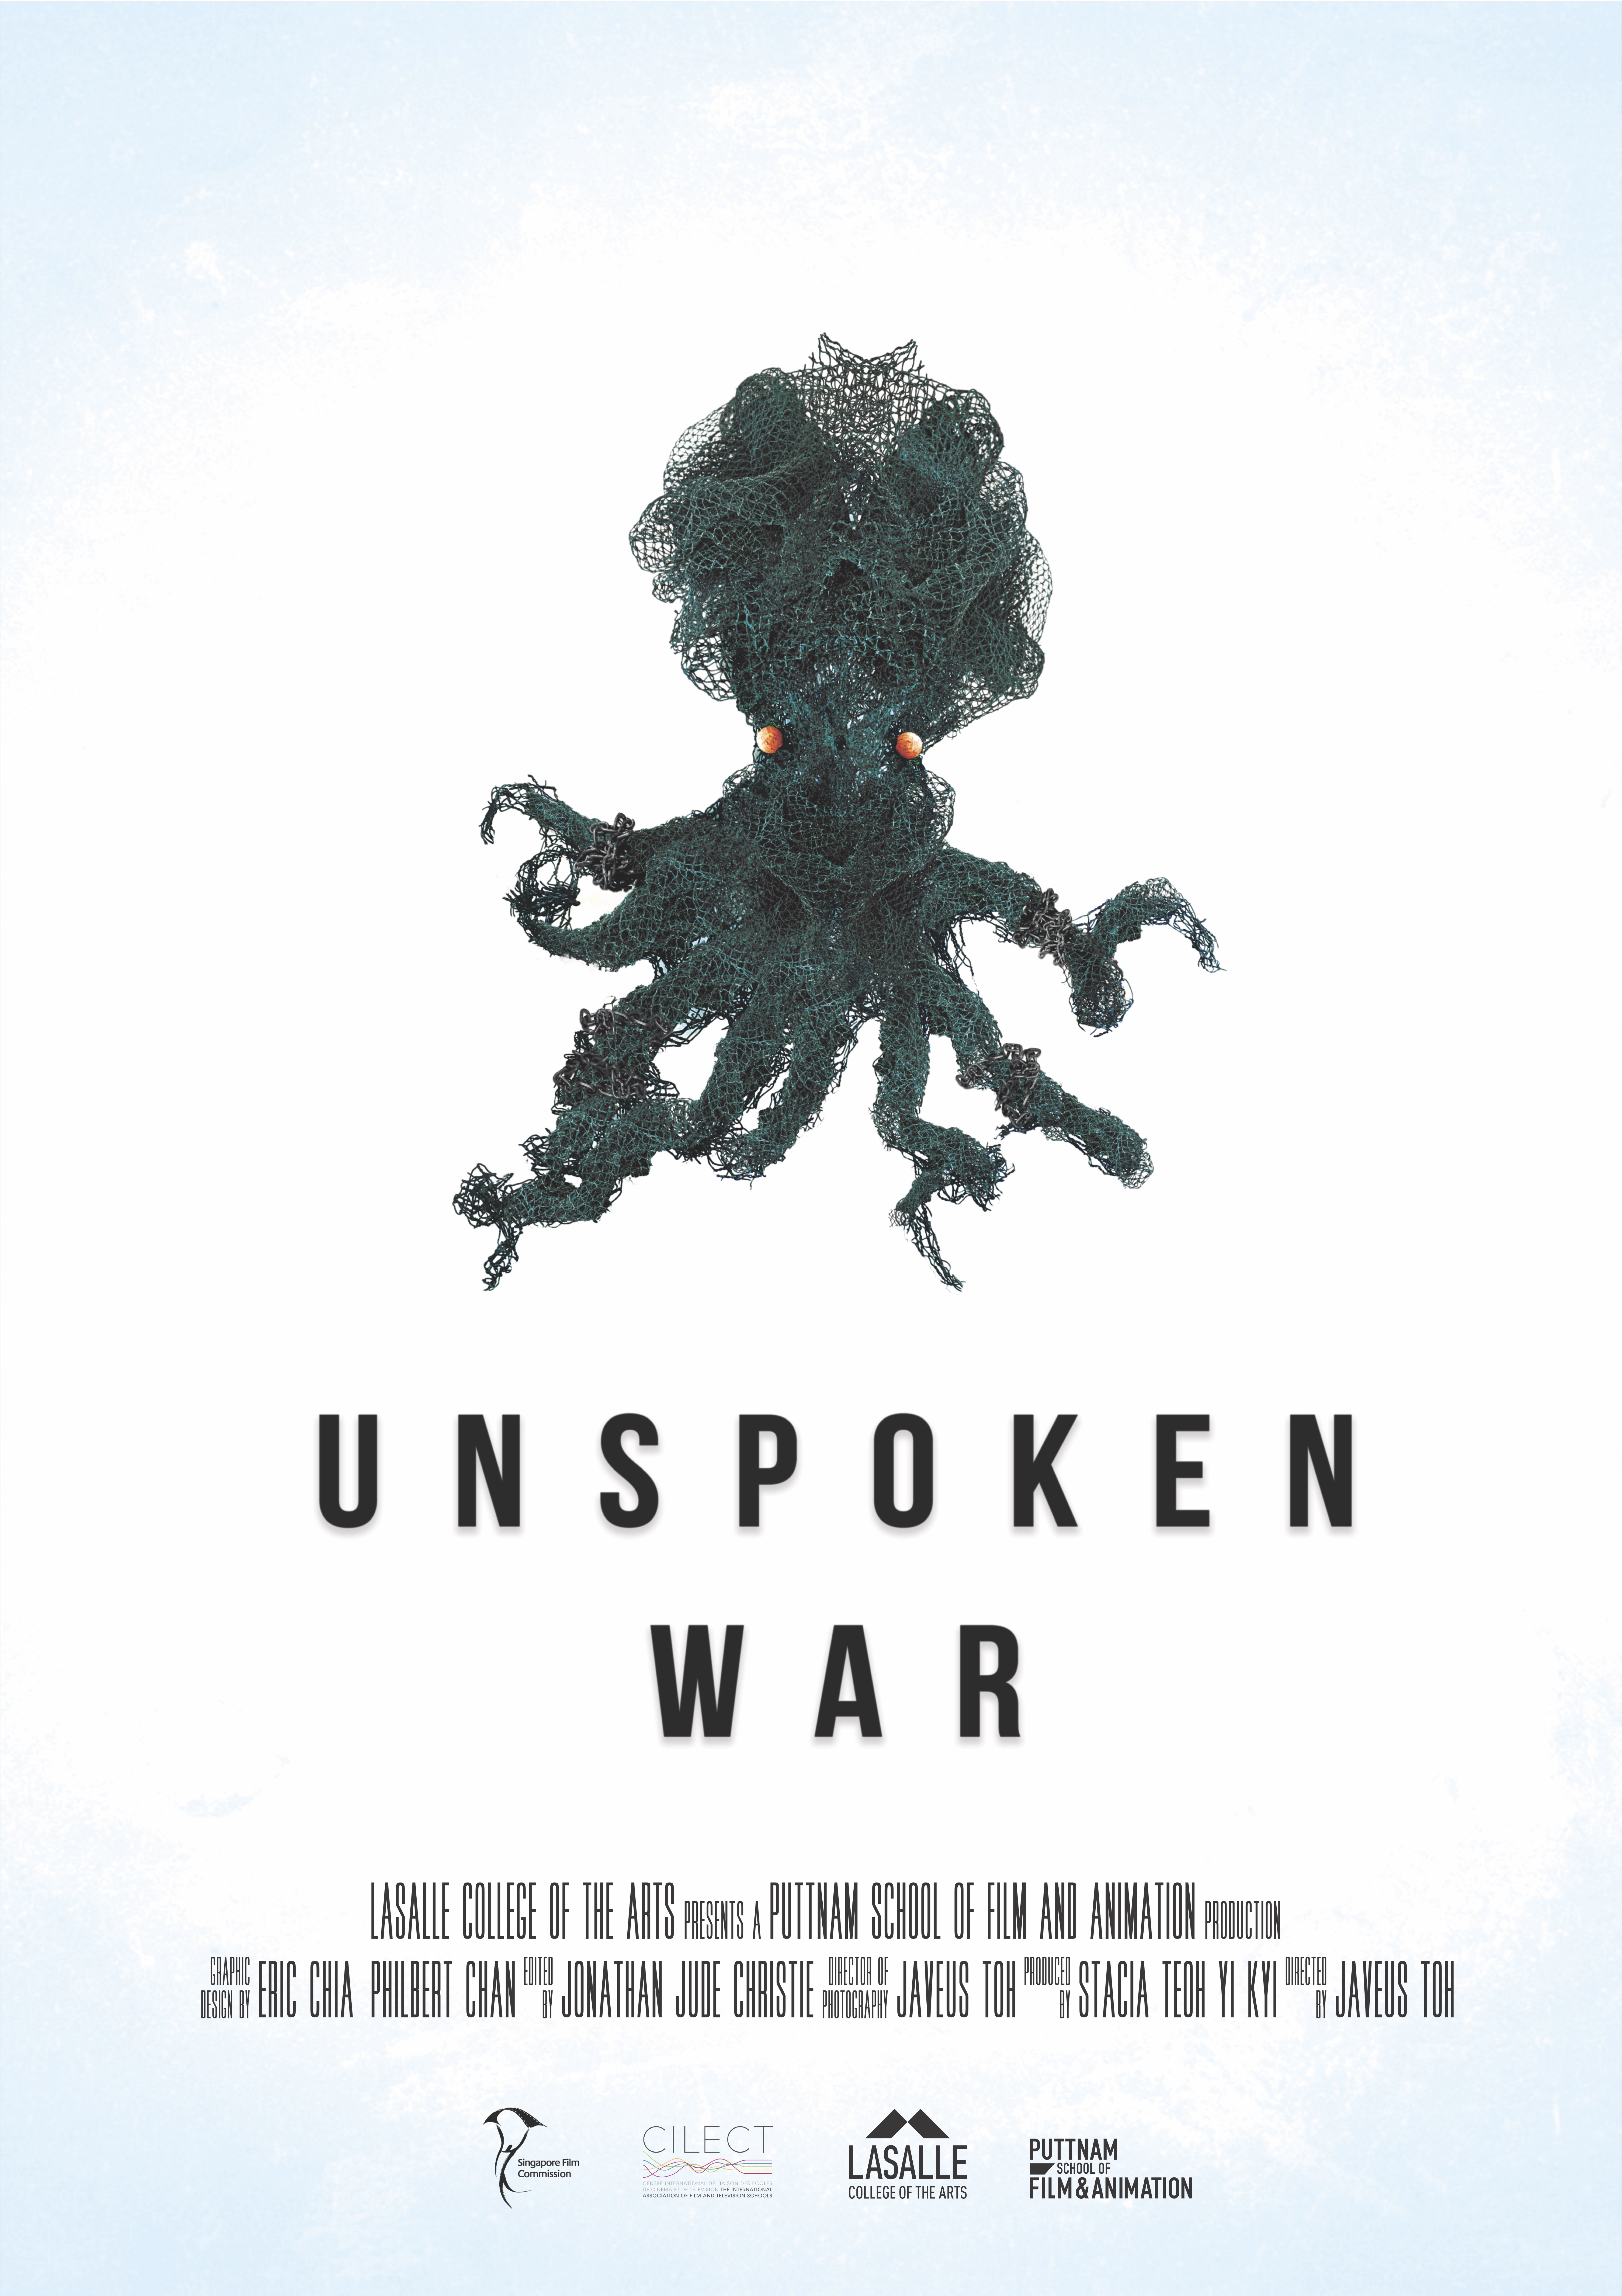 Unspoken Wars